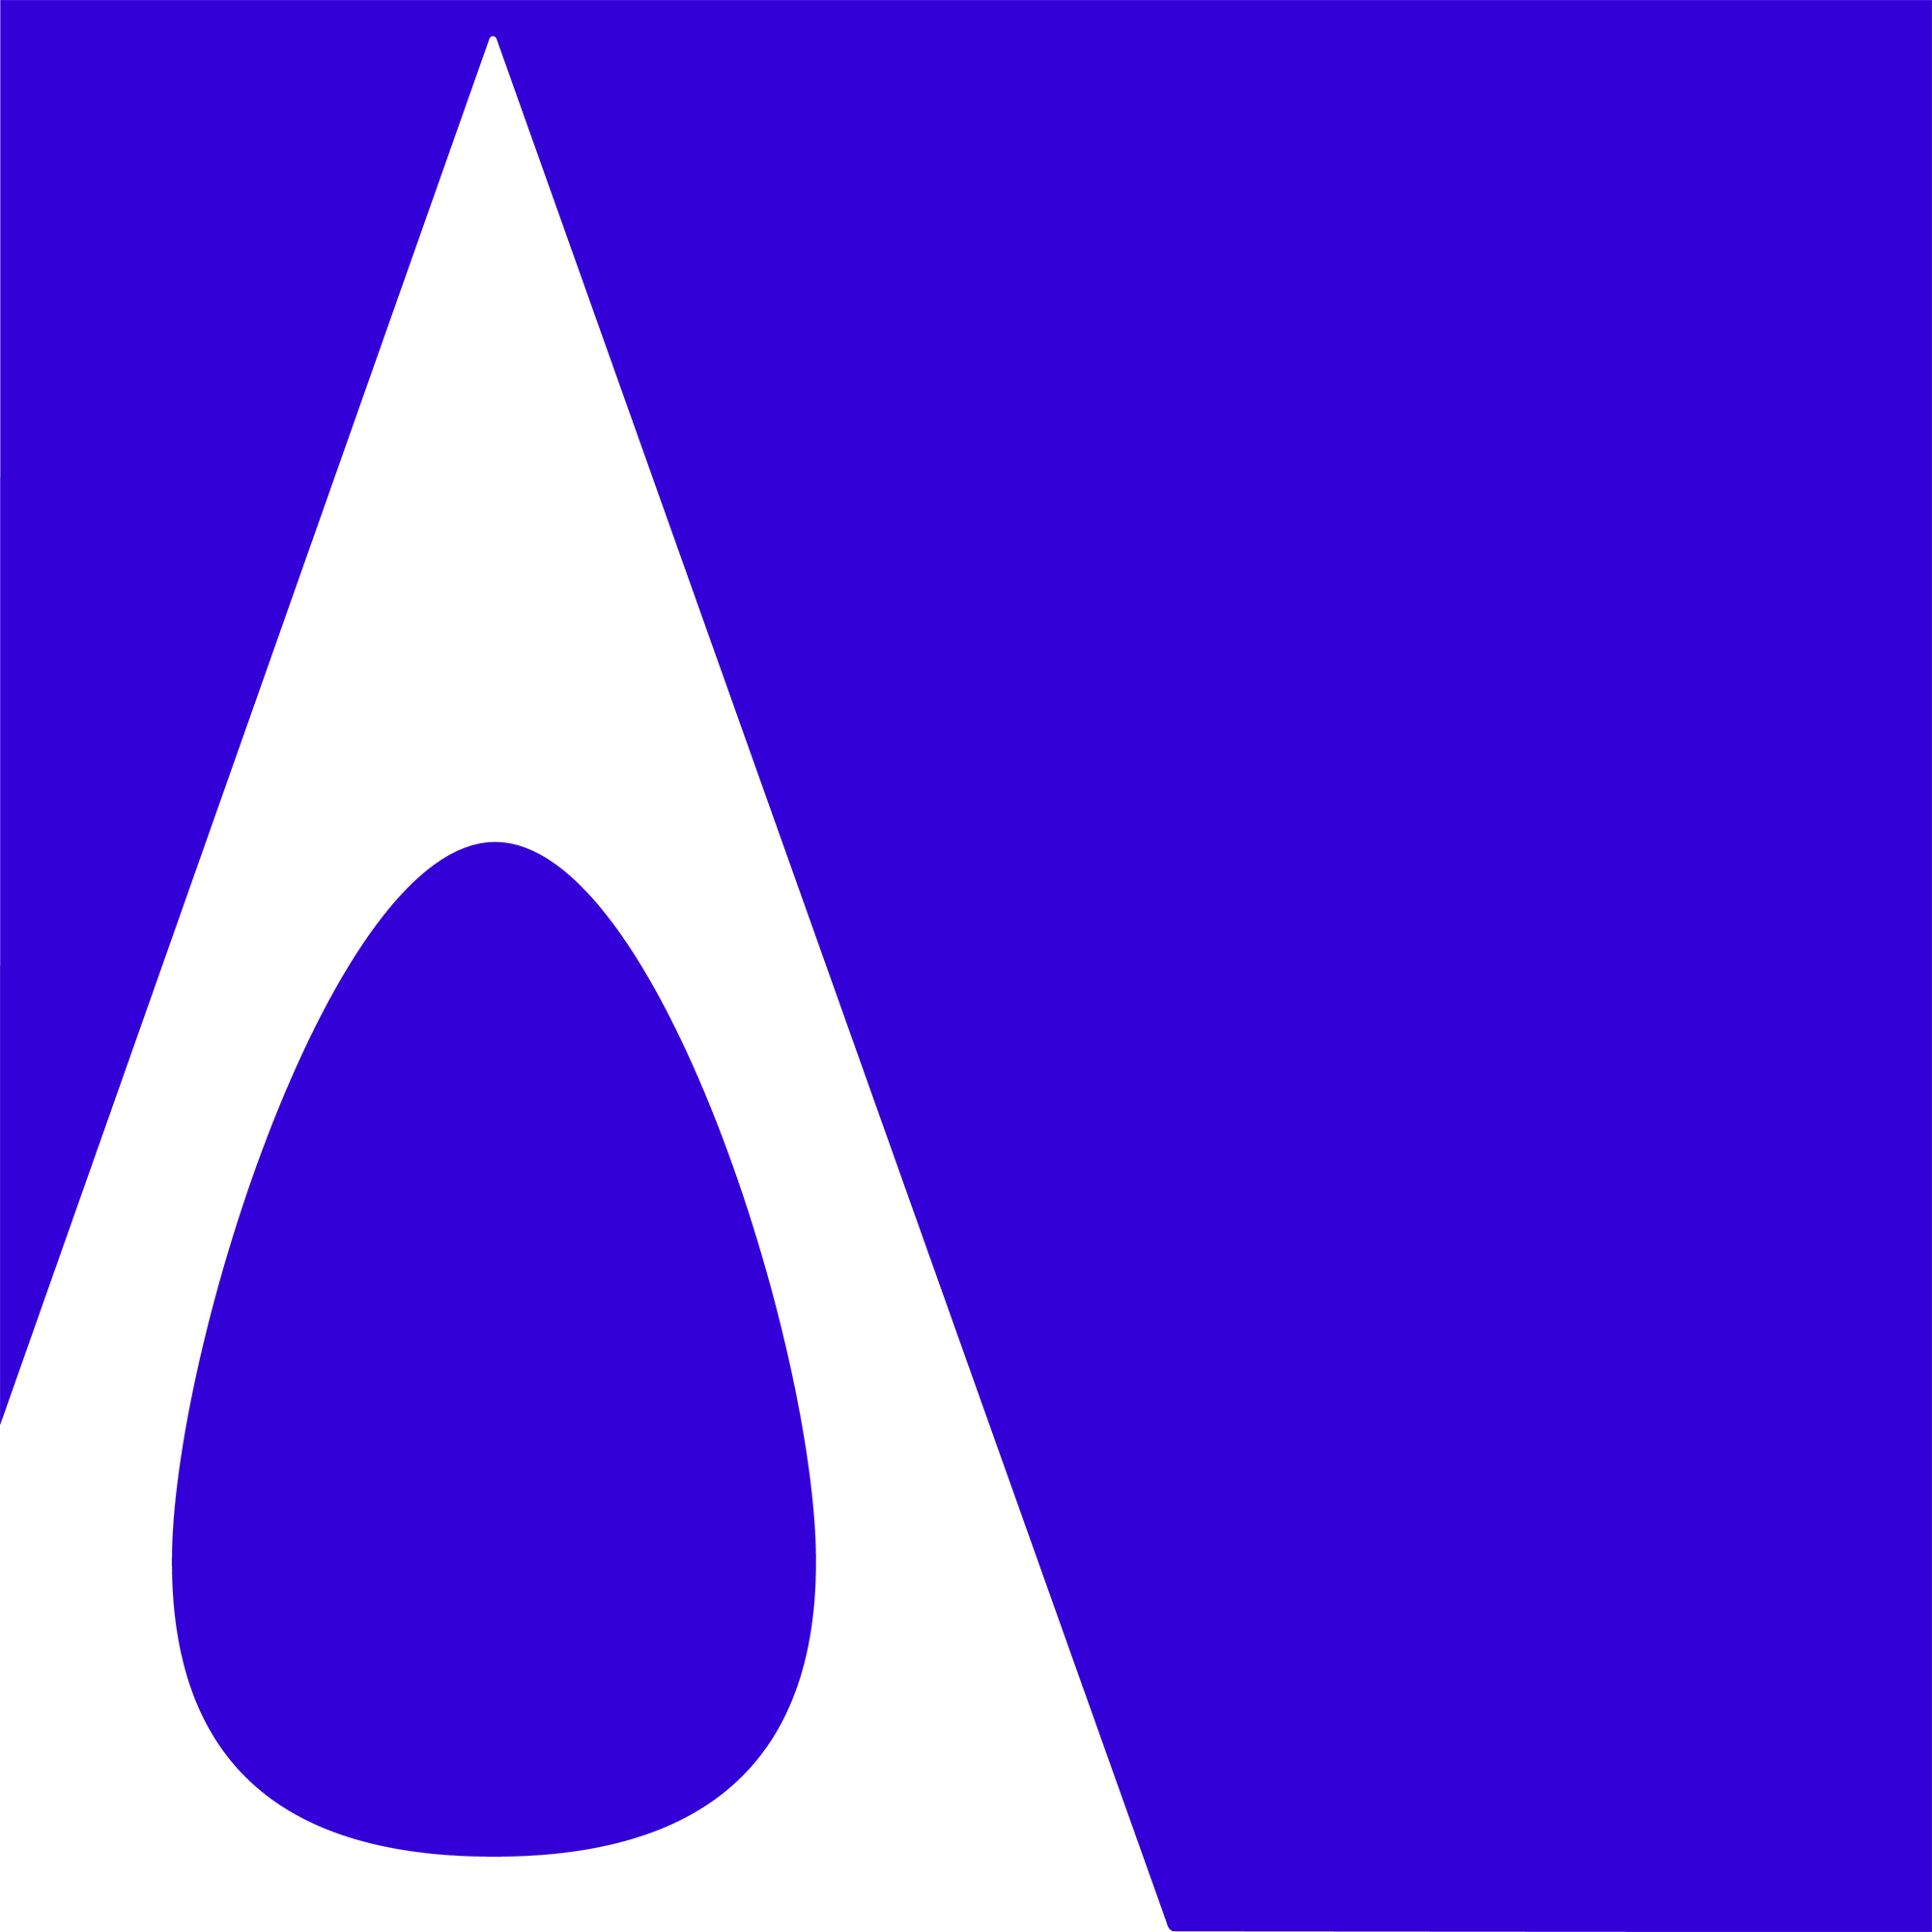 adesign awards logo